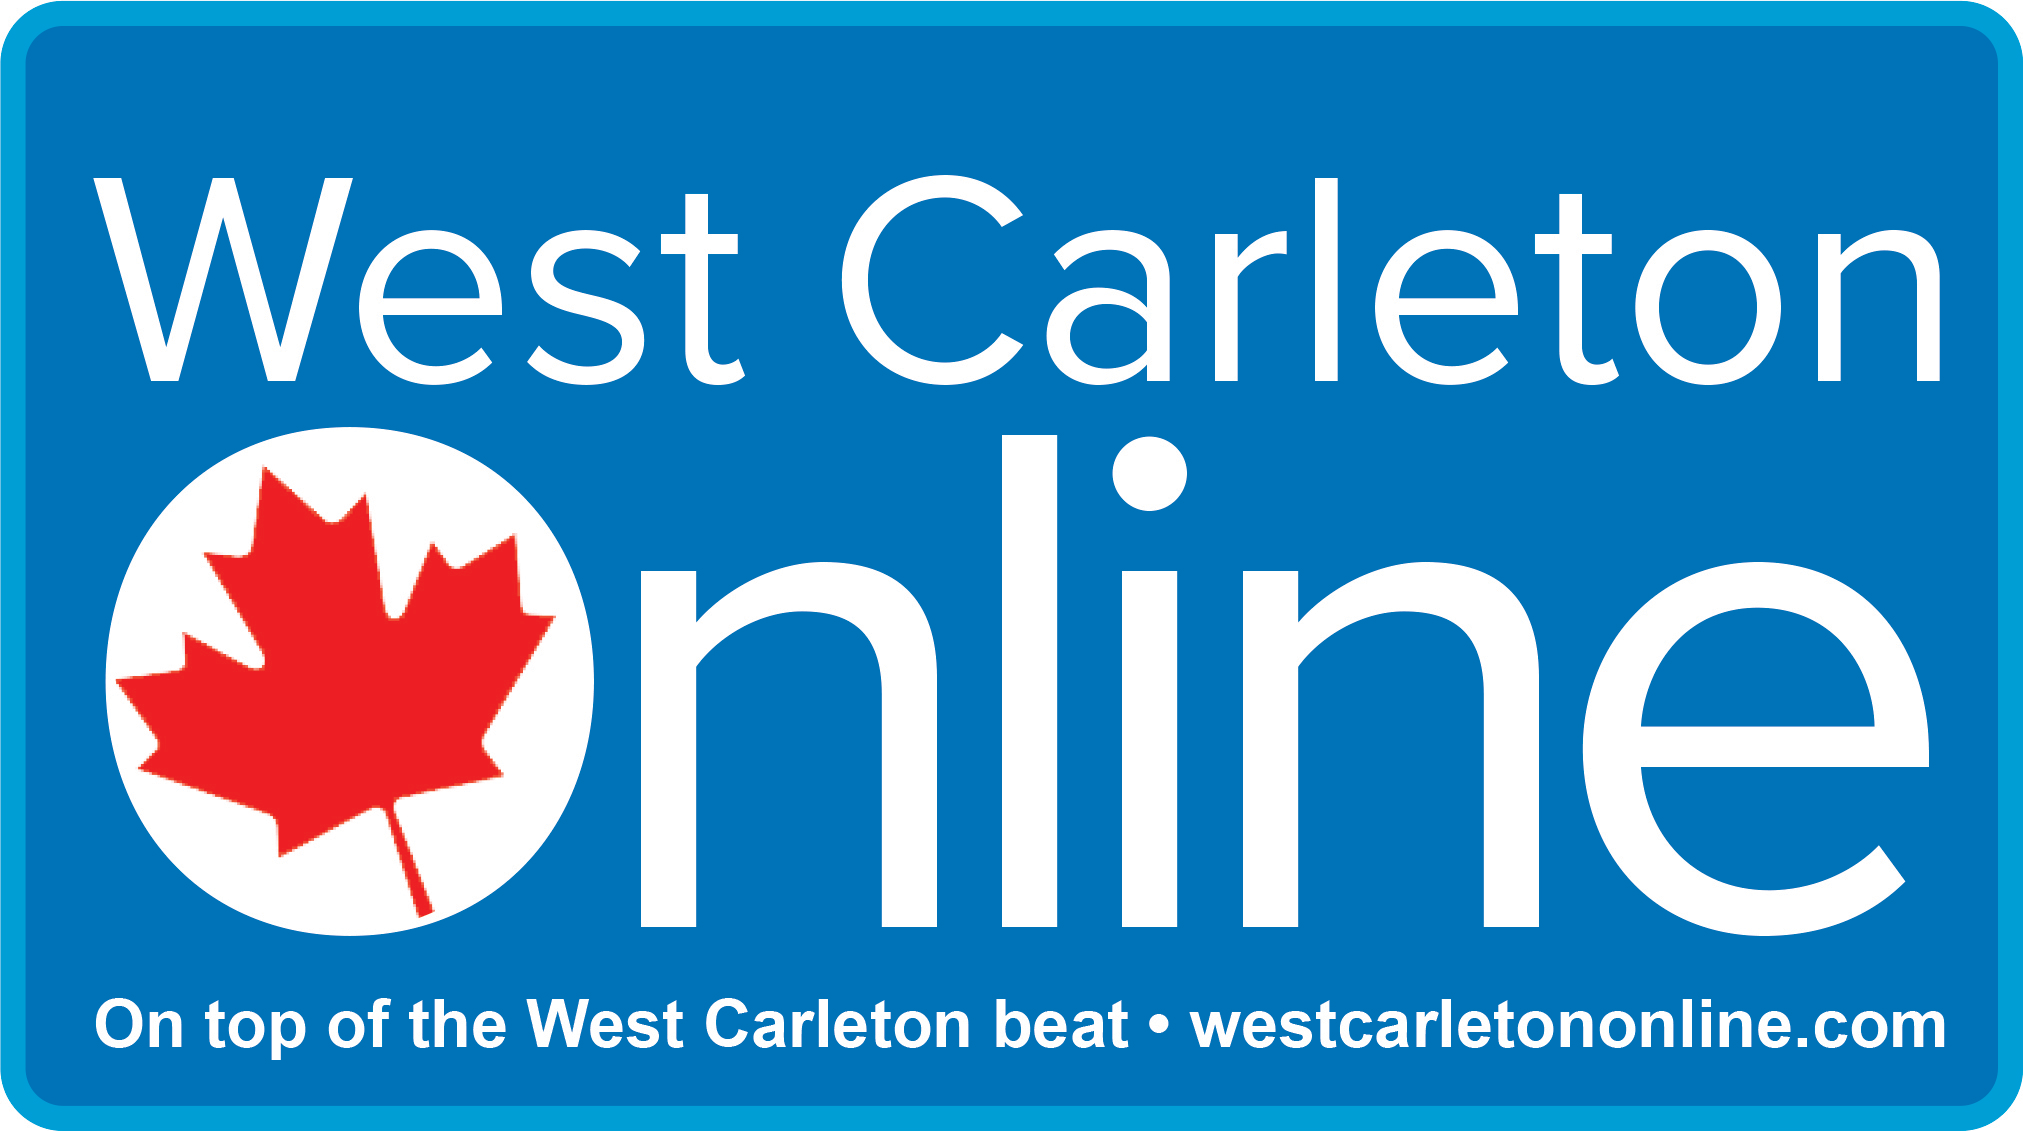 A Canada Day West Carleton Online logo.